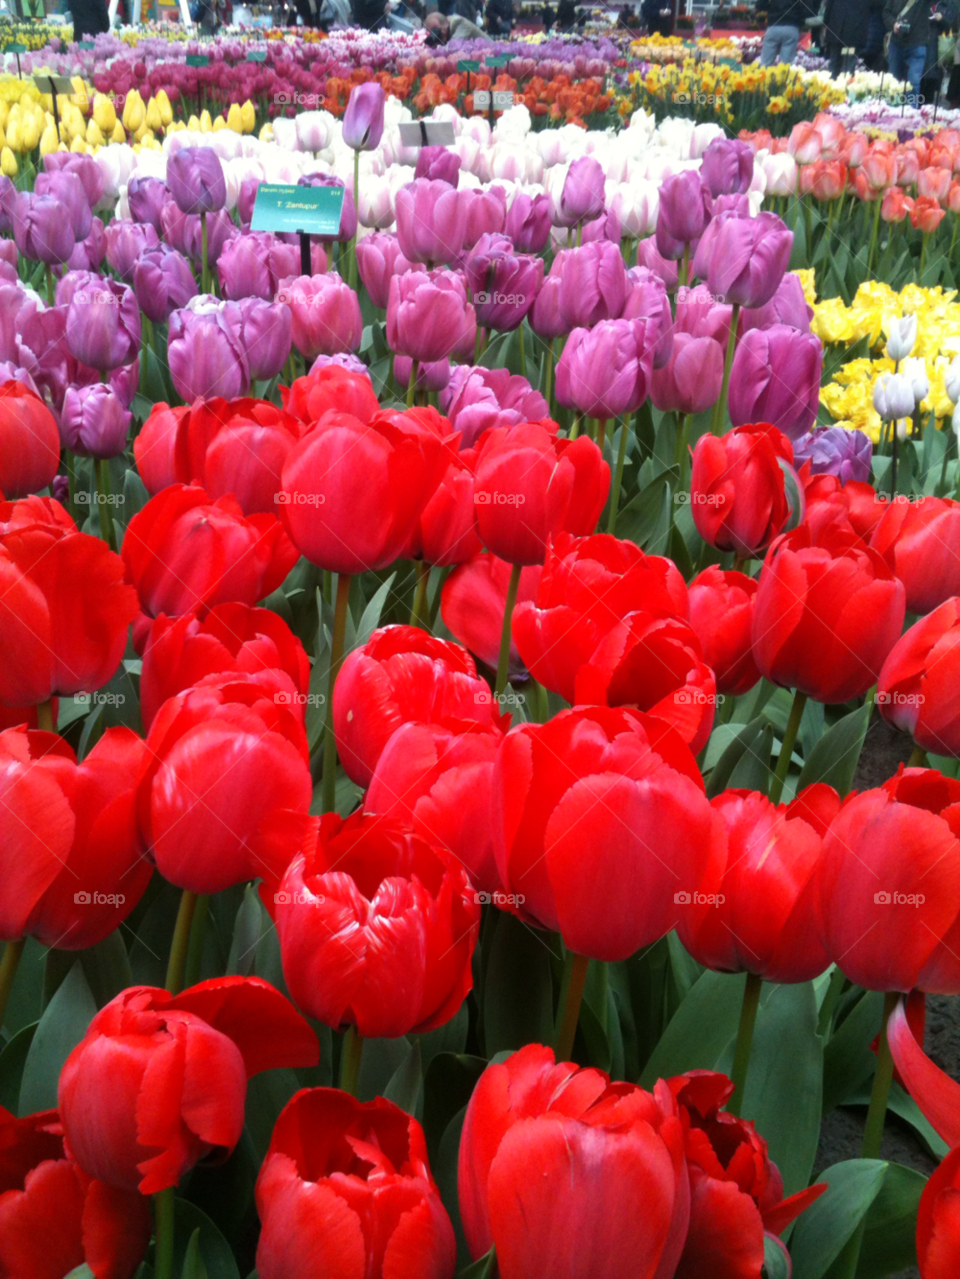 flowers tulips holland keukenhof by StevenFromHolland